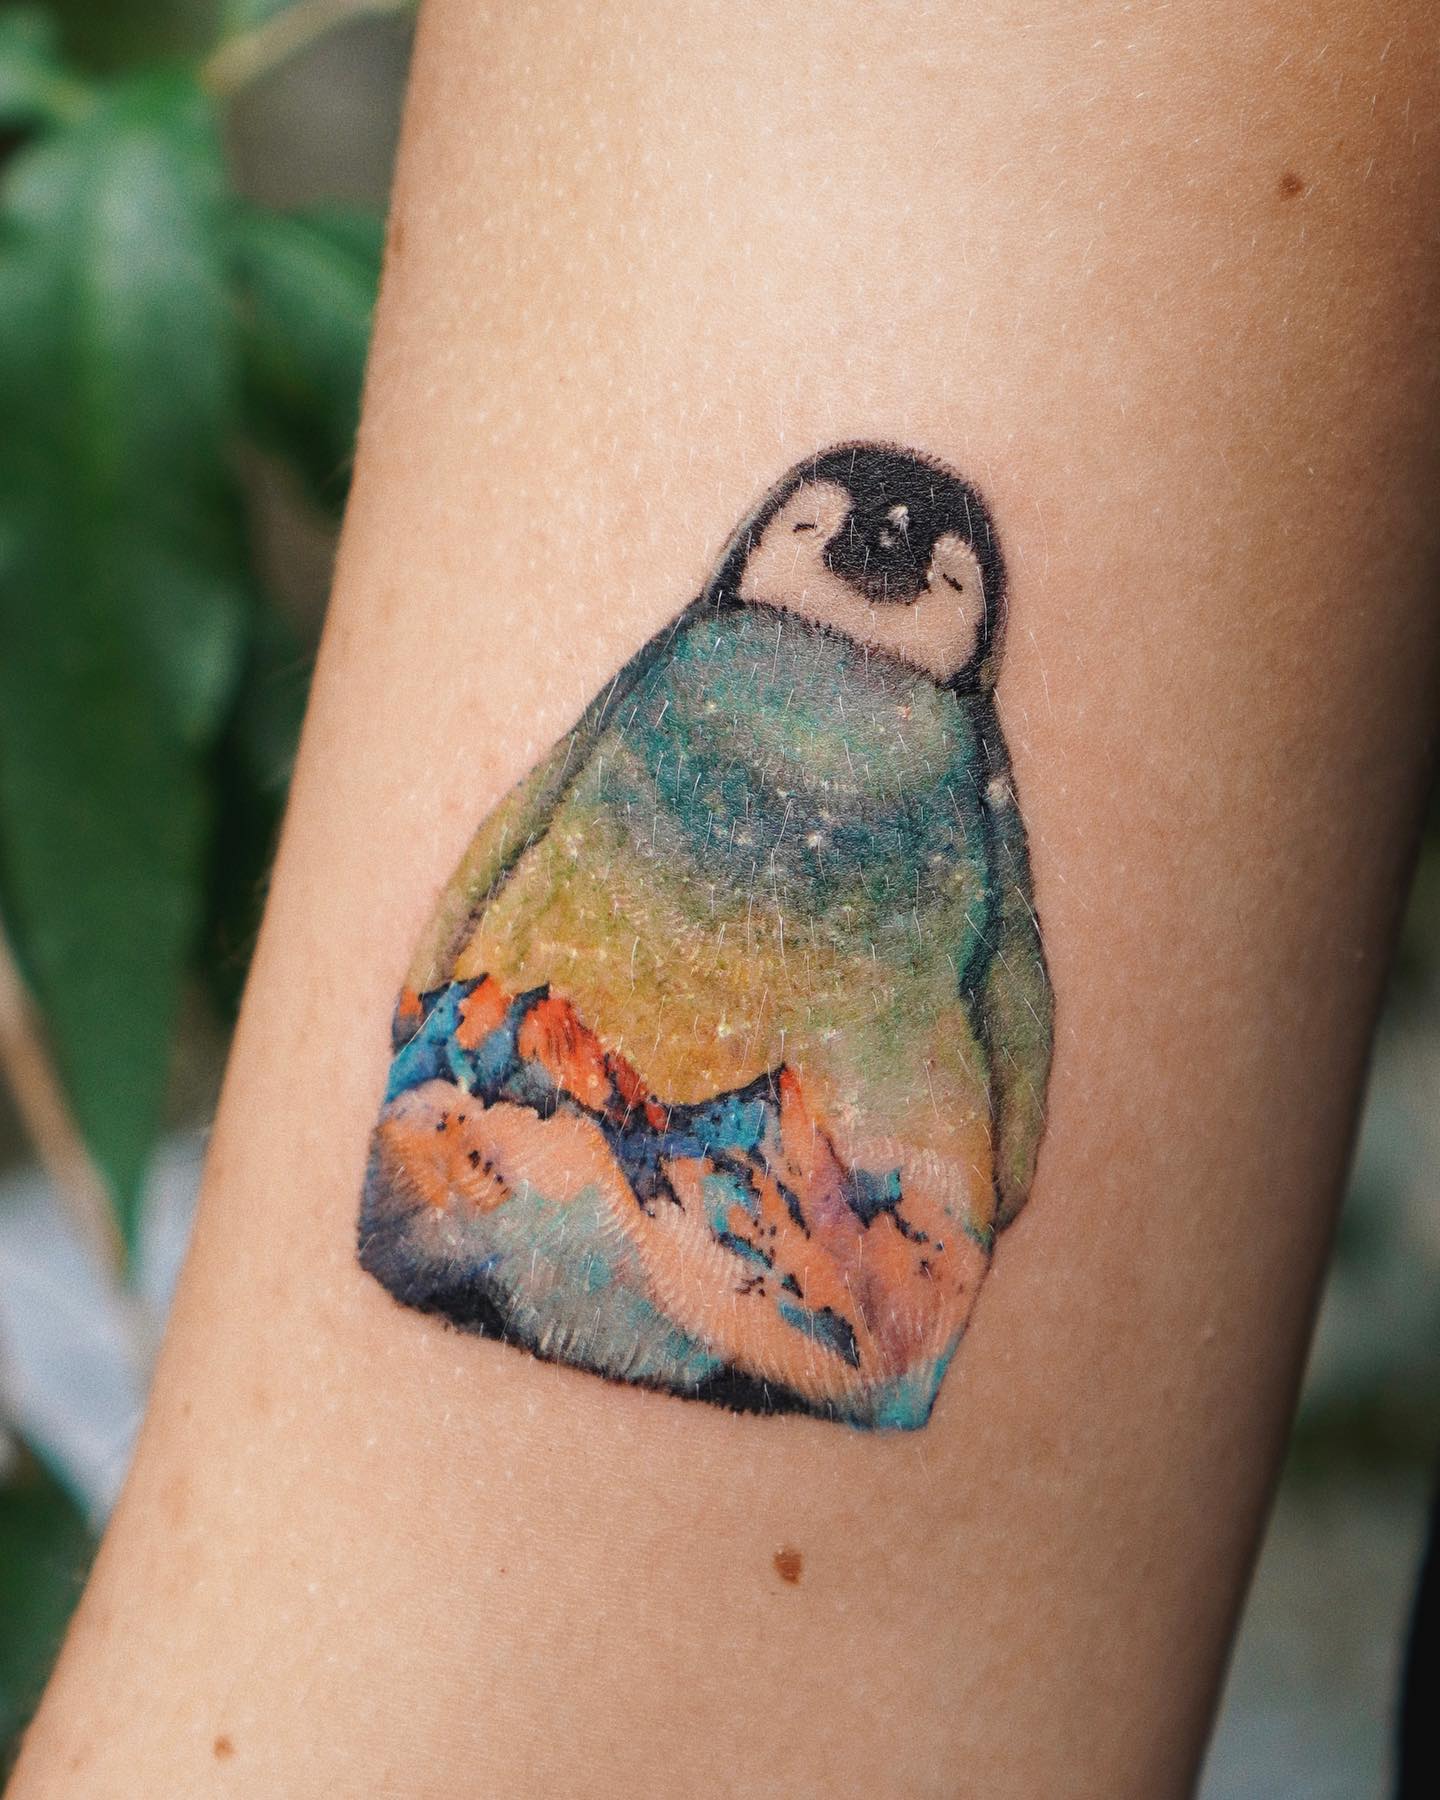 Tatuaje de pingüino superpuesto en la Antártida